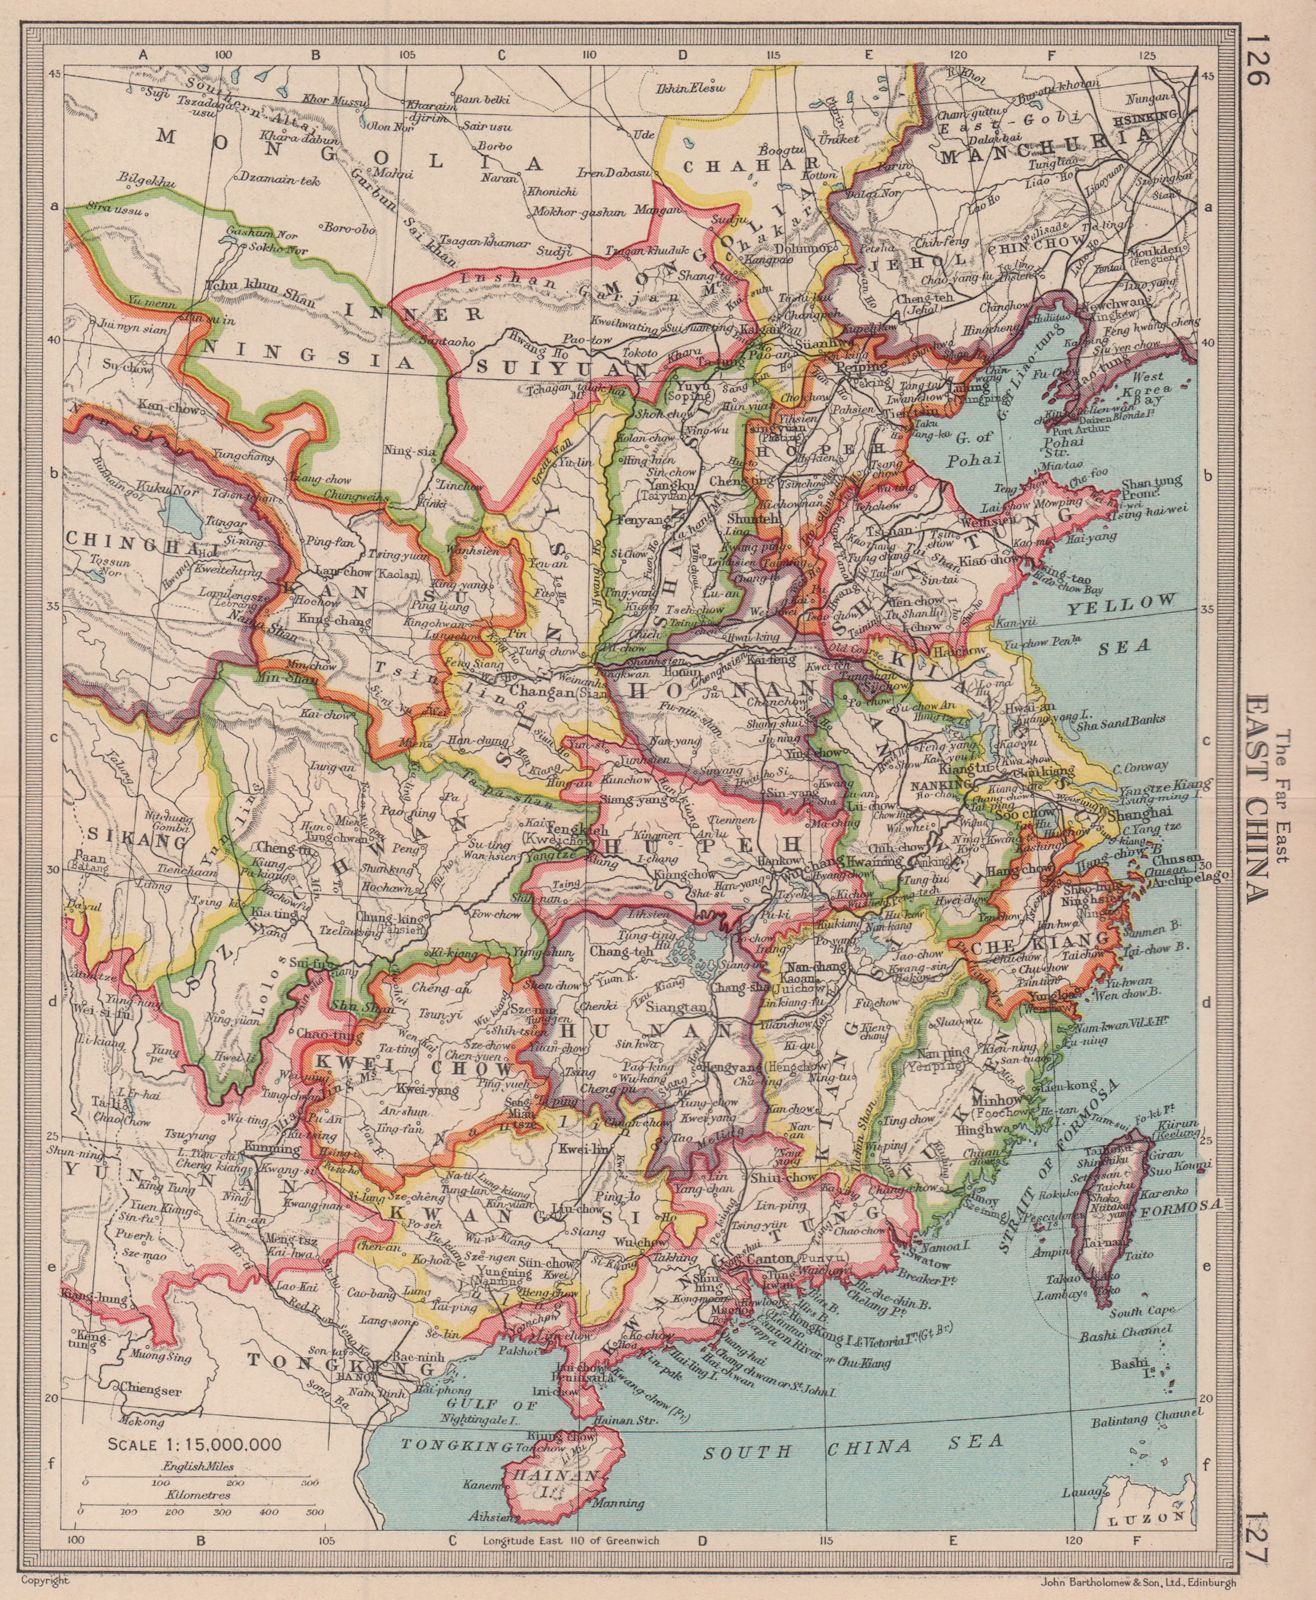 China. BARTHOLOMEW 1949 old vintage map plan chart